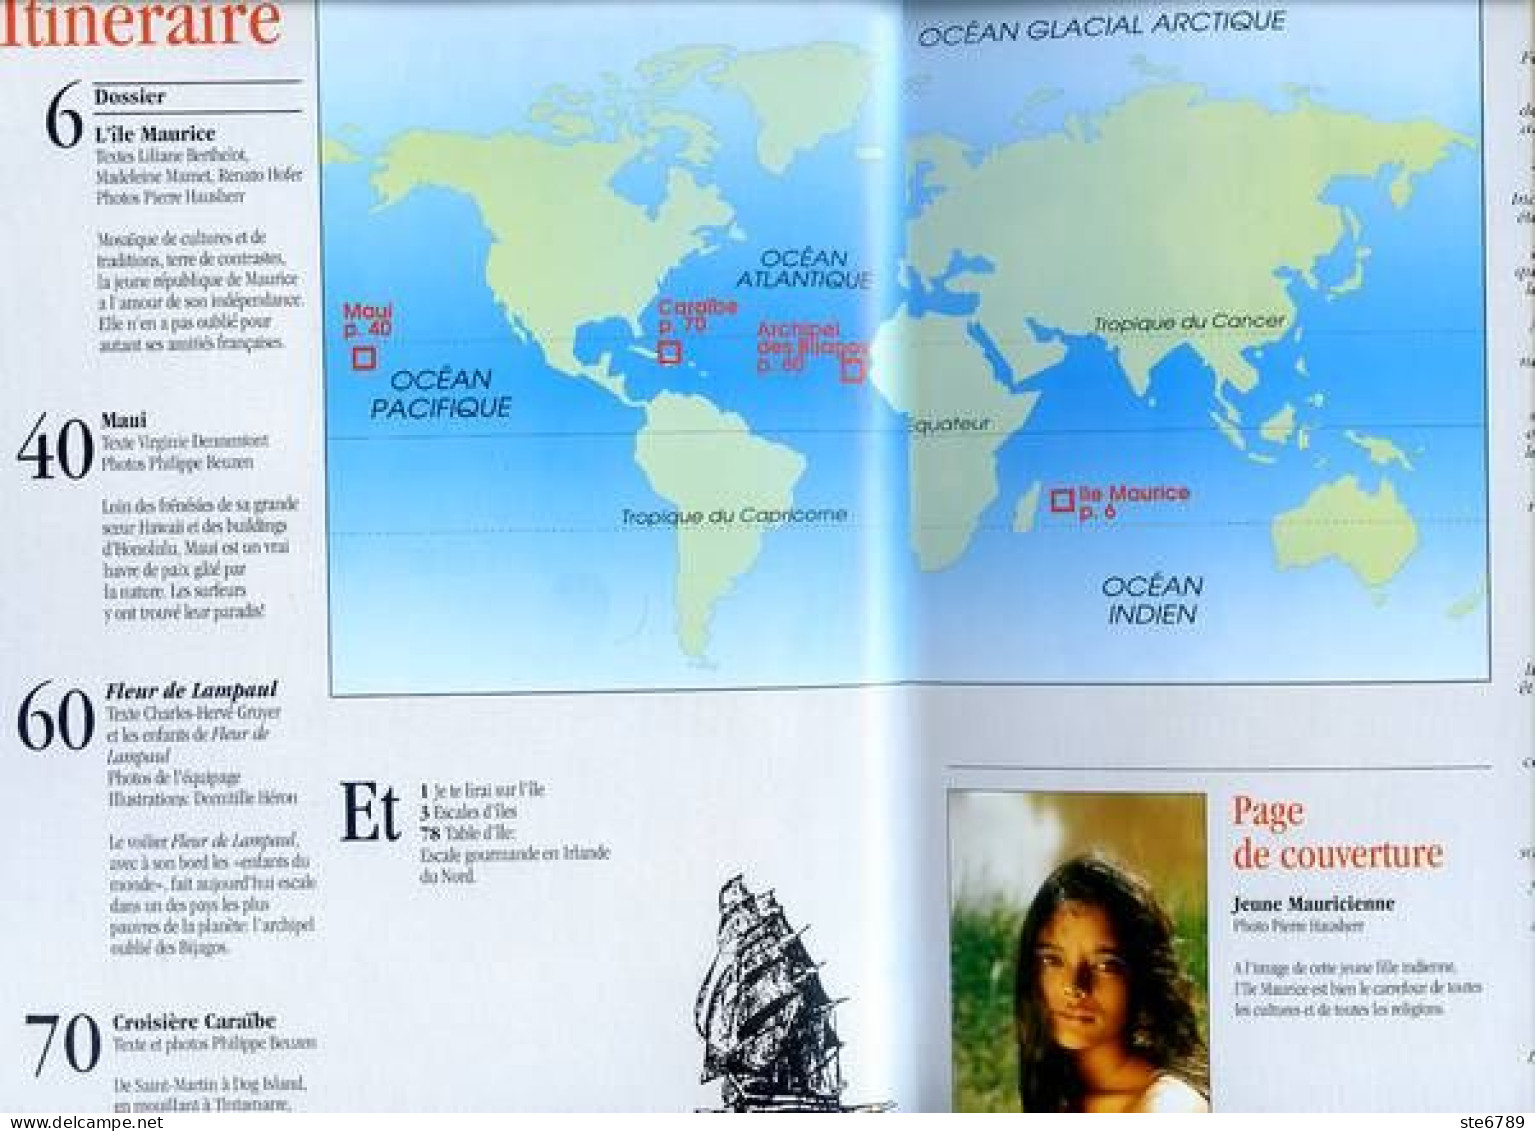 ILES MAGAZINE N° 30 Dossier Ile Maurice , Maui , Croisiere Iles Dans Les Caraibes - Geographie